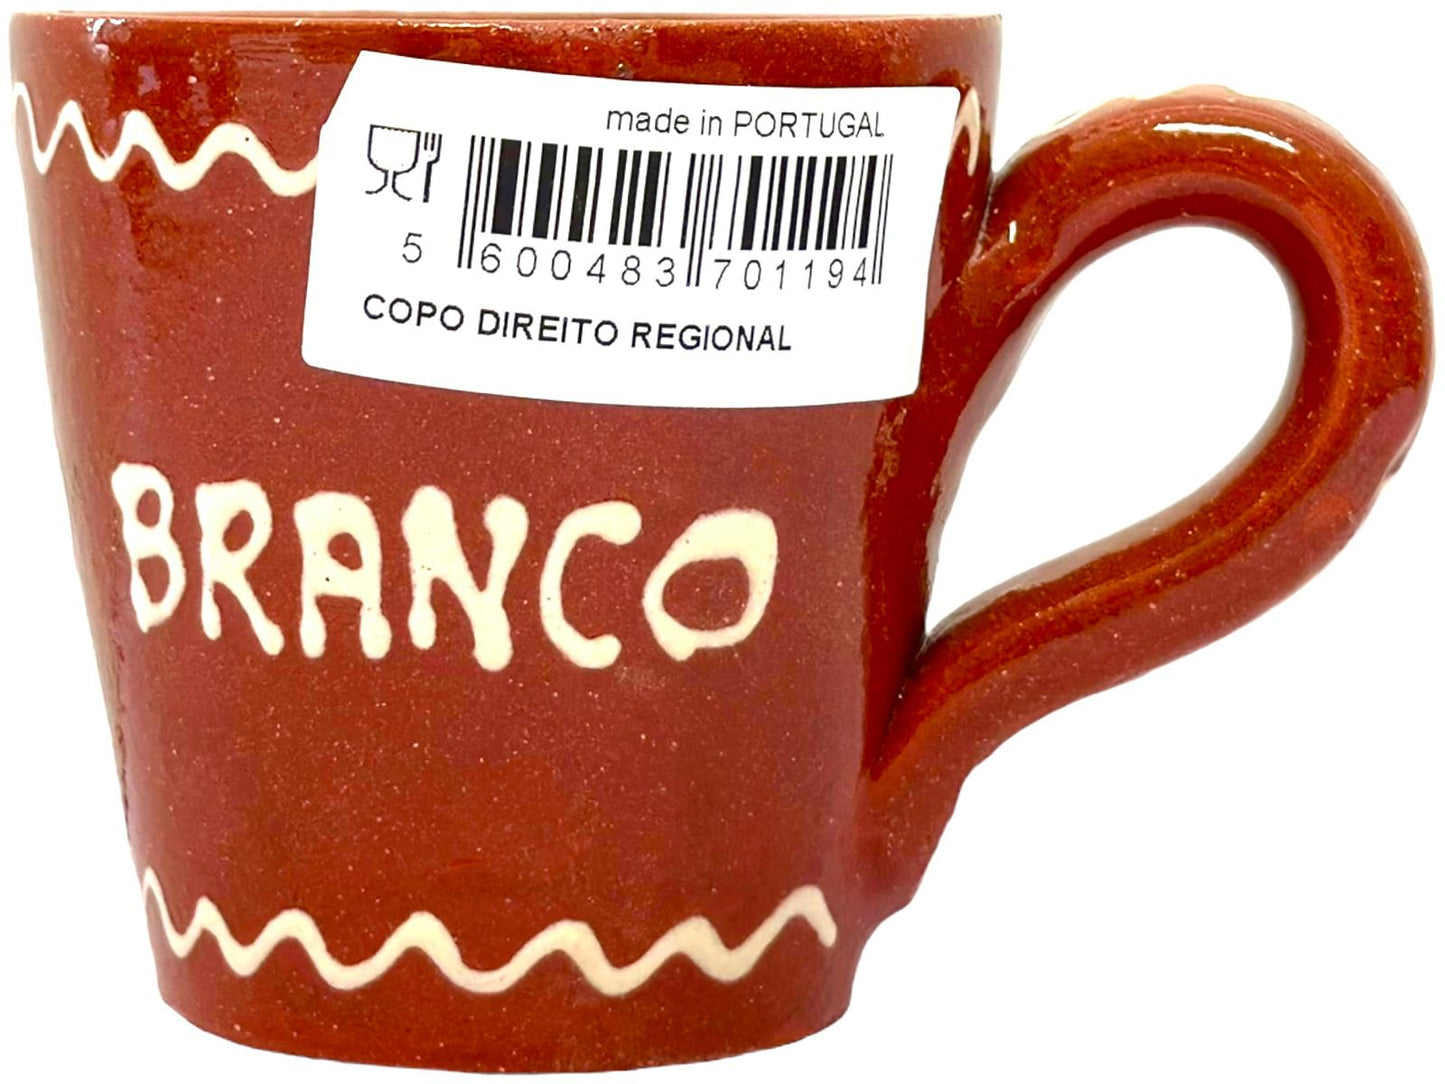 Edgar Picas Copo Direito Bebe Vinho Branco Portuguese Terracotta Mug 8.5cm x 9cm